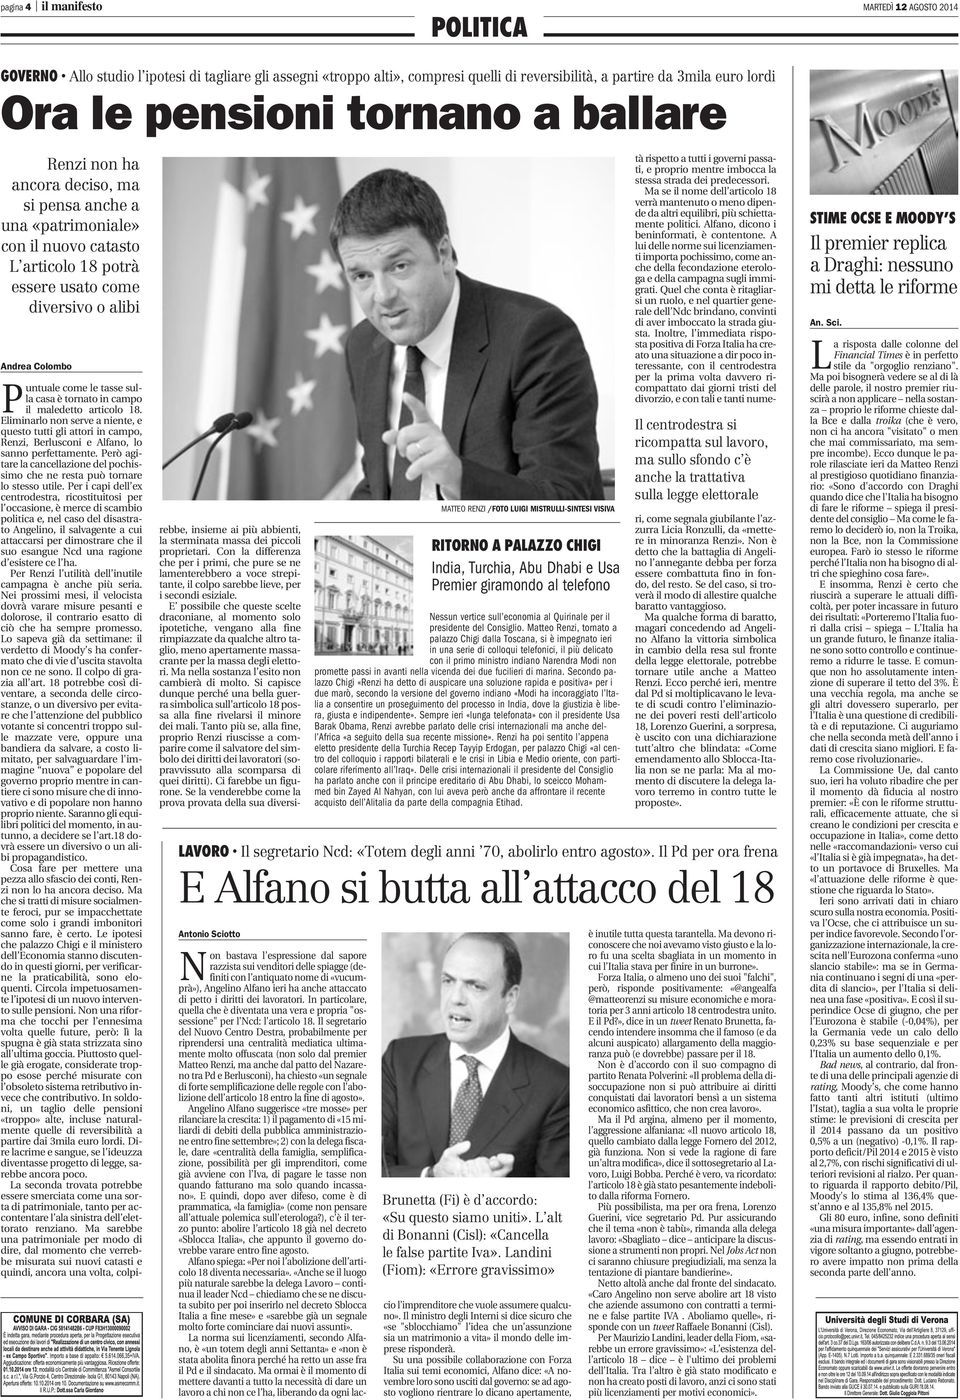 come le tasse sulla casa è tornato in campo il maledetto articolo 18. Eliminarlo non serve a niente, e questo tutti gli attori in campo, Renzi, Berlusconi e Alfano, lo sanno perfettamente.